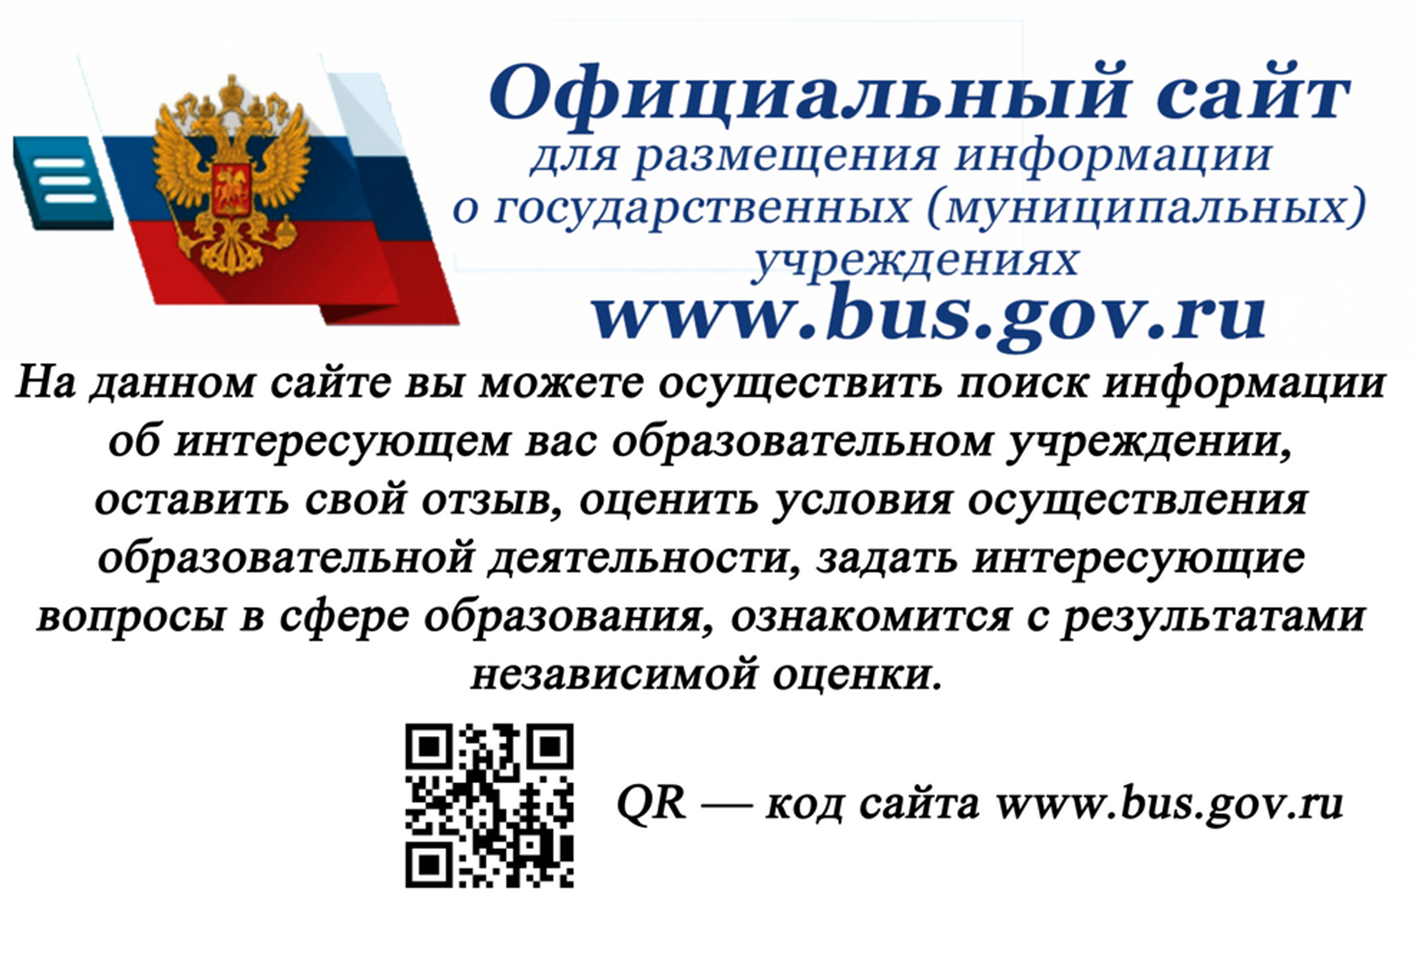 Размещение информации о государственных муниципальных учреждениях. Bus.gov.ru баннер. Независимая оценка качества образовательных услуг. Https://Bus.gov.ru/. Размещение информации.